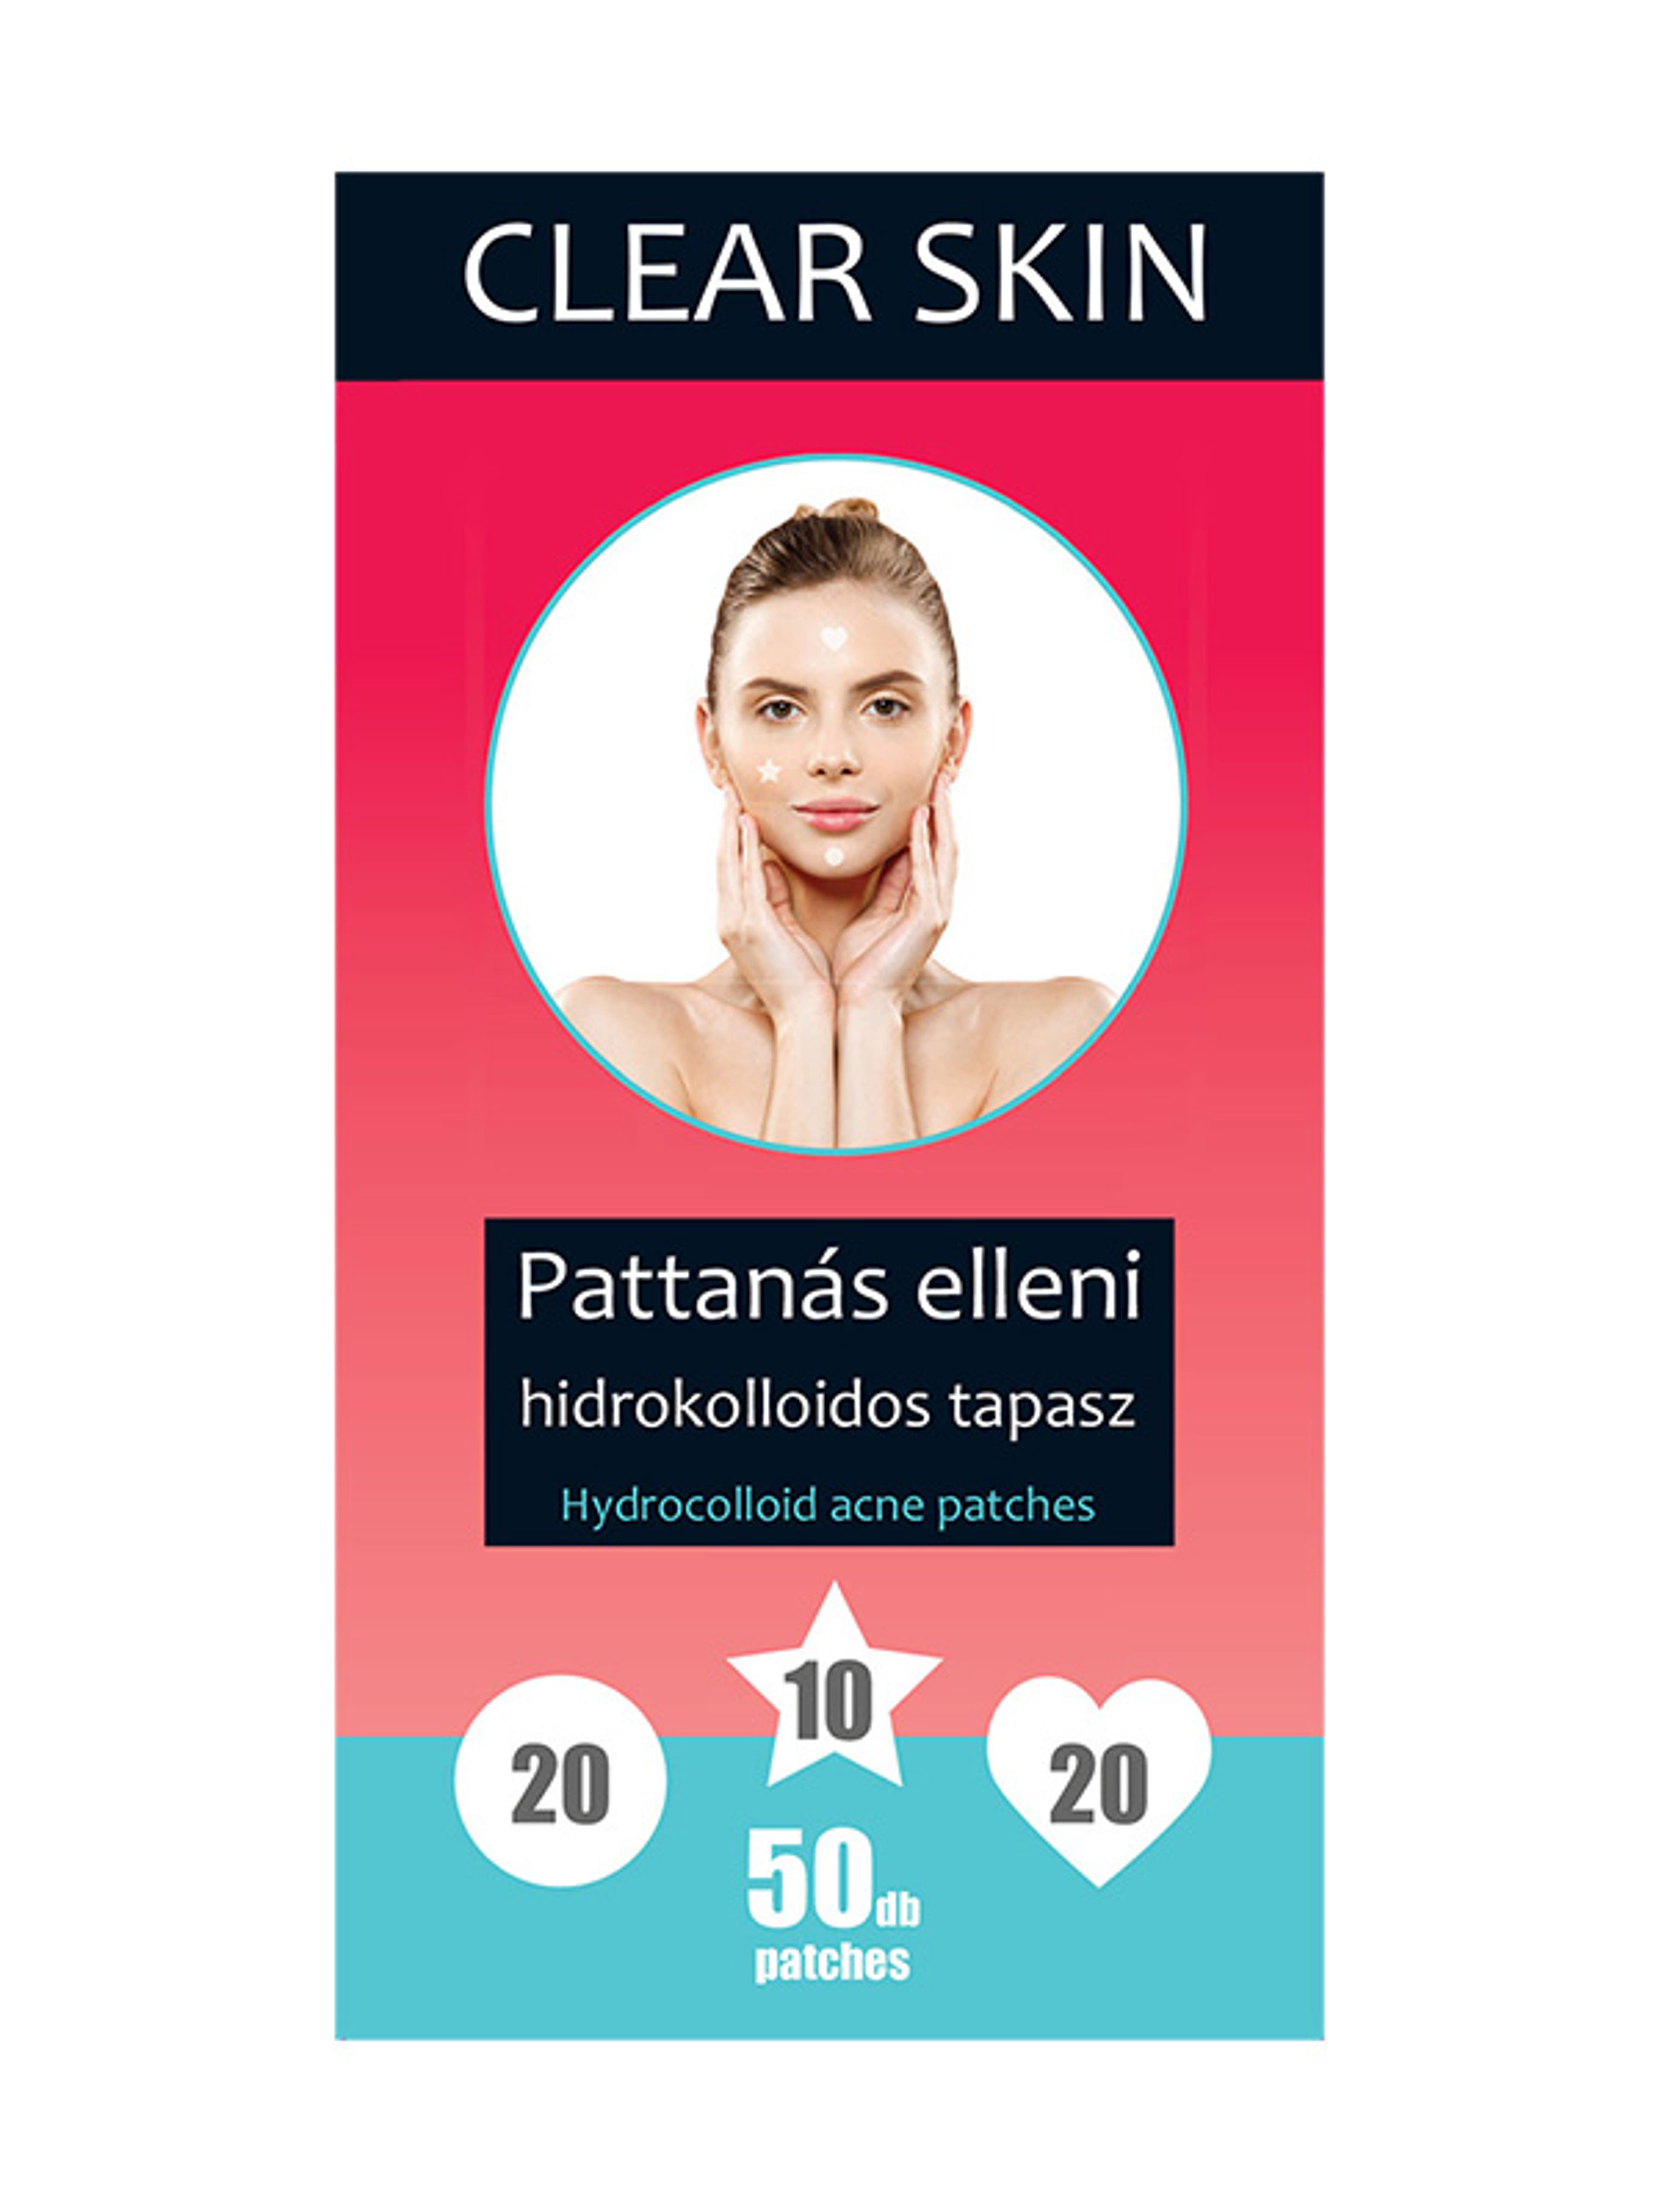 Clear skin pattanas elleni tapasz 50 db-os - 1 db